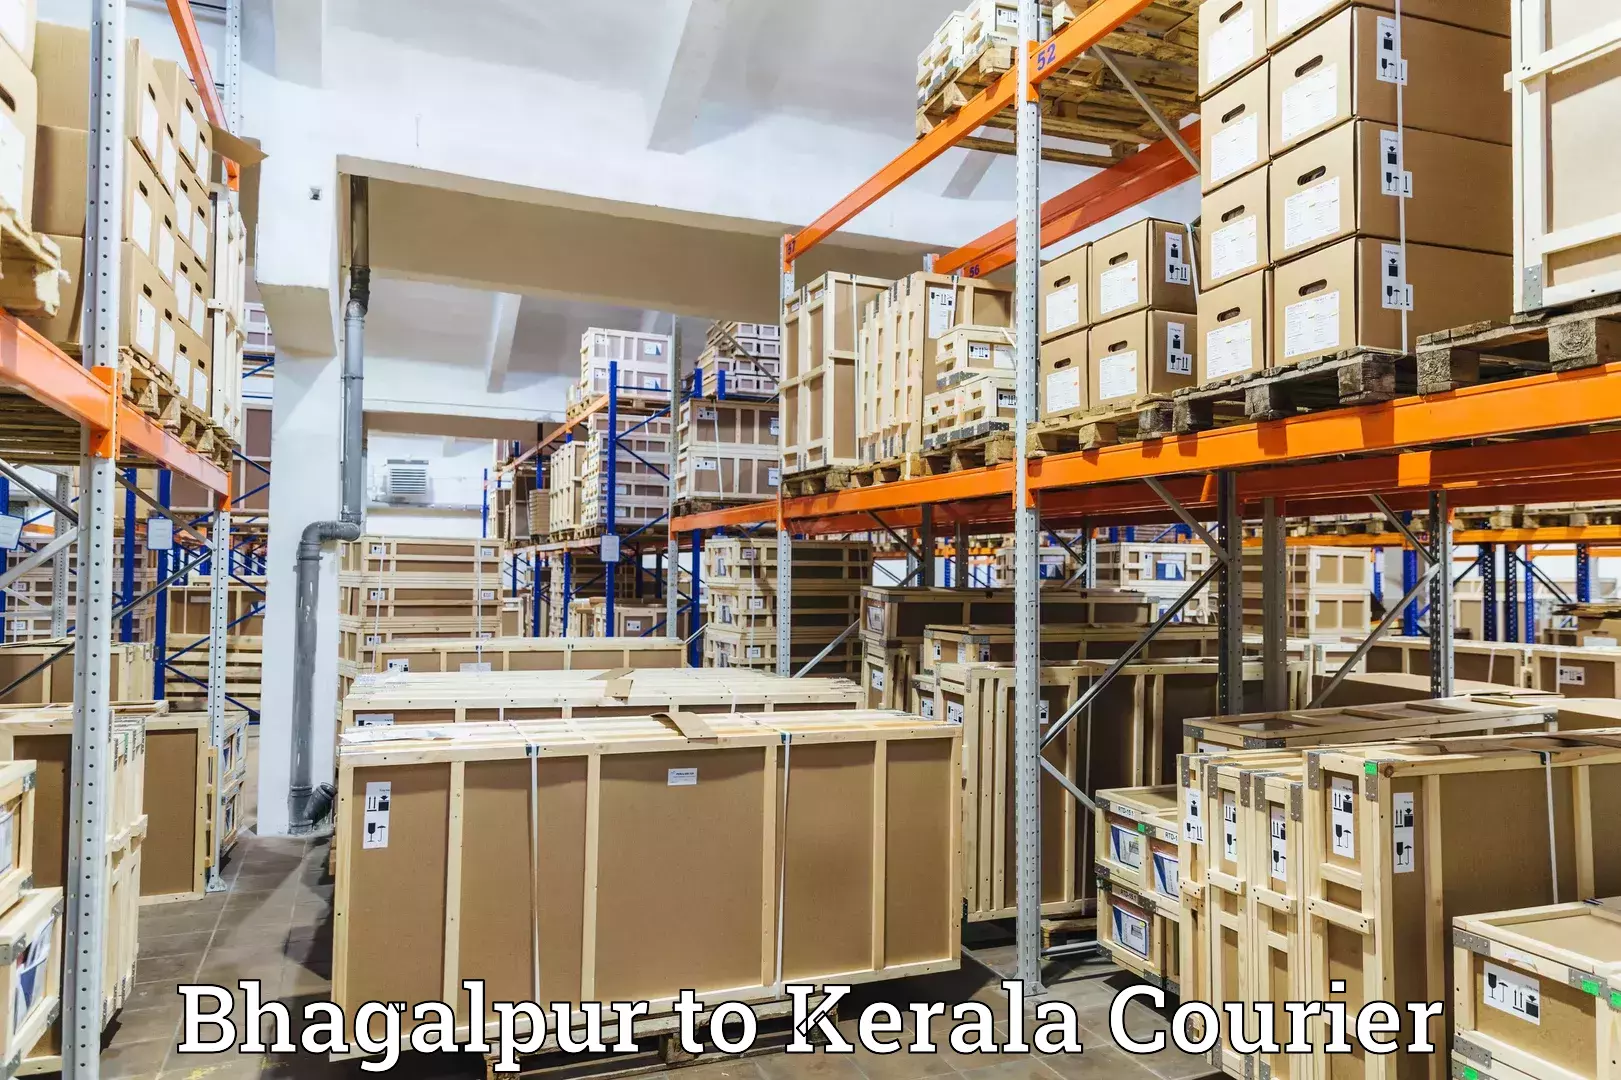 Nationwide parcel services Bhagalpur to Kazhakkoottam